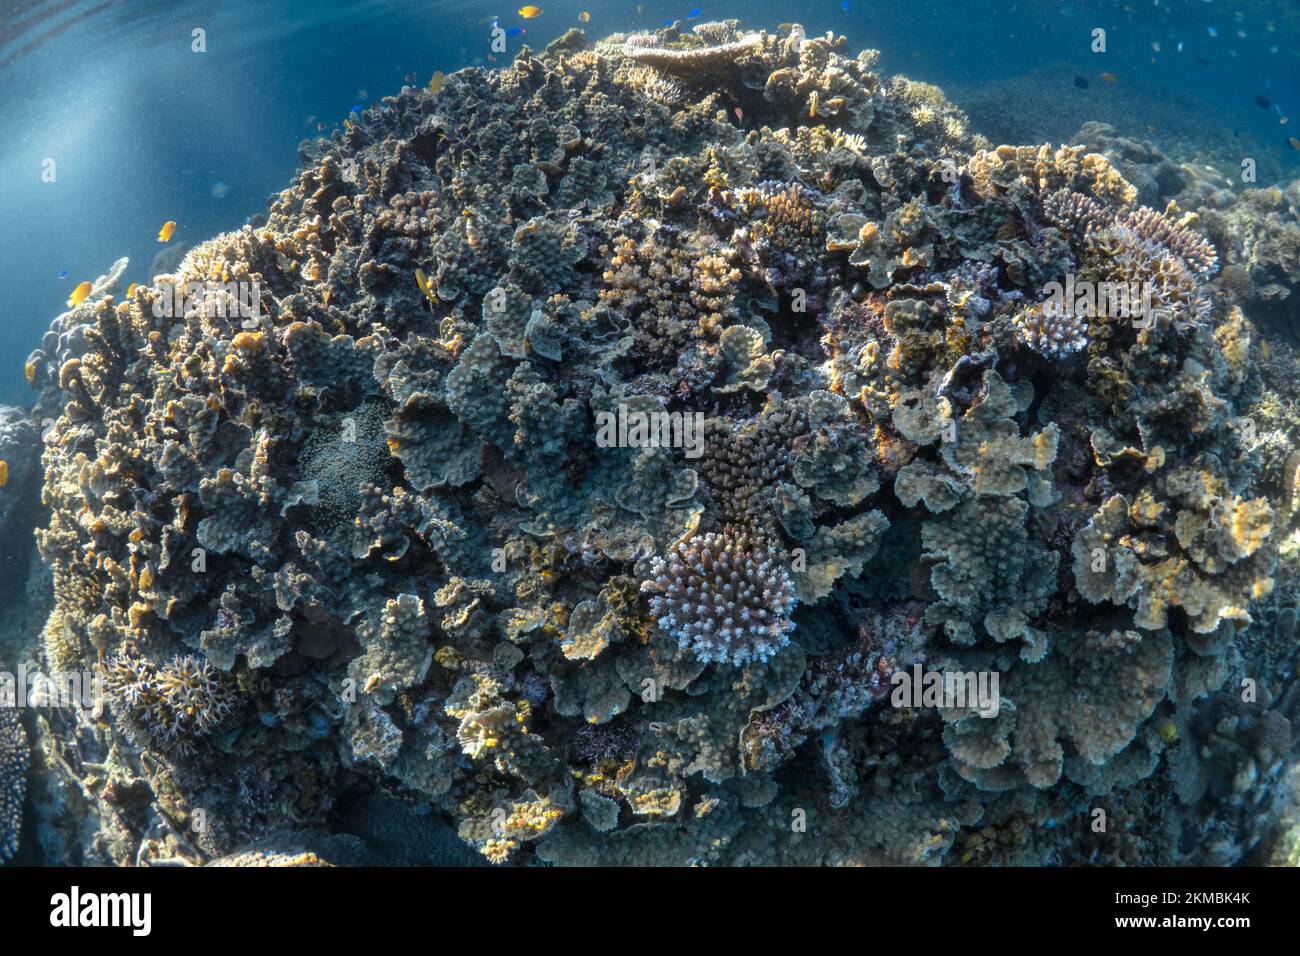 Incontaminato e sano giardino di corallo duro sulla barriera corallina poco profonda nell'Indo-pacifico Foto Stock